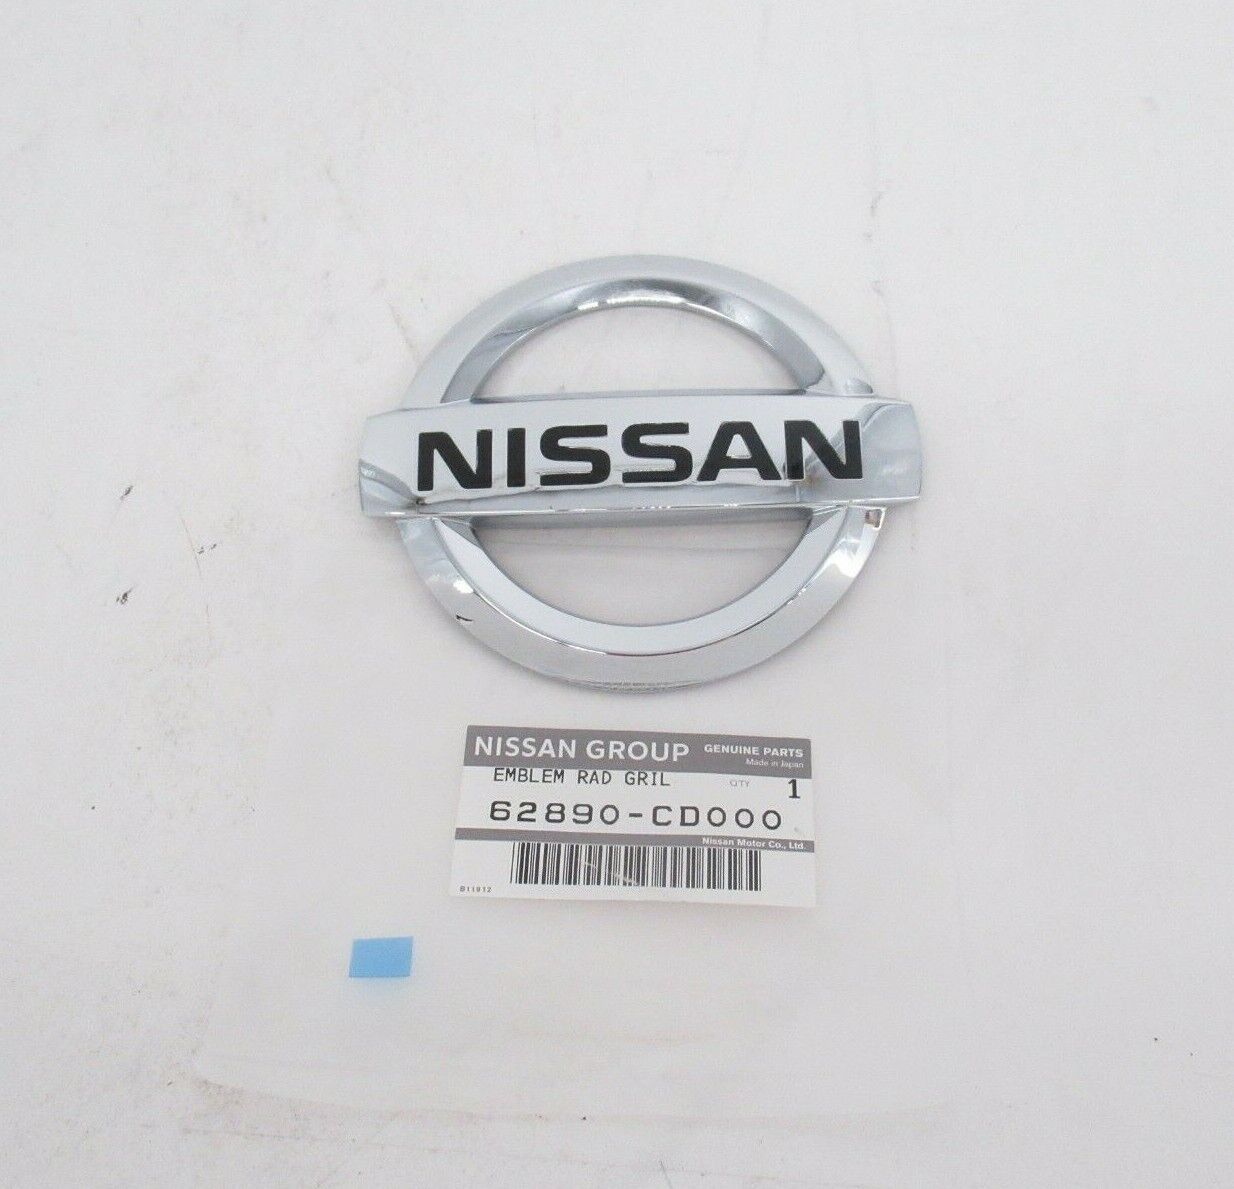 Genuine OEM Nissan 62890-CD000 Front Emblem Logo 2003-2008 350Z 2009-2016 370Z